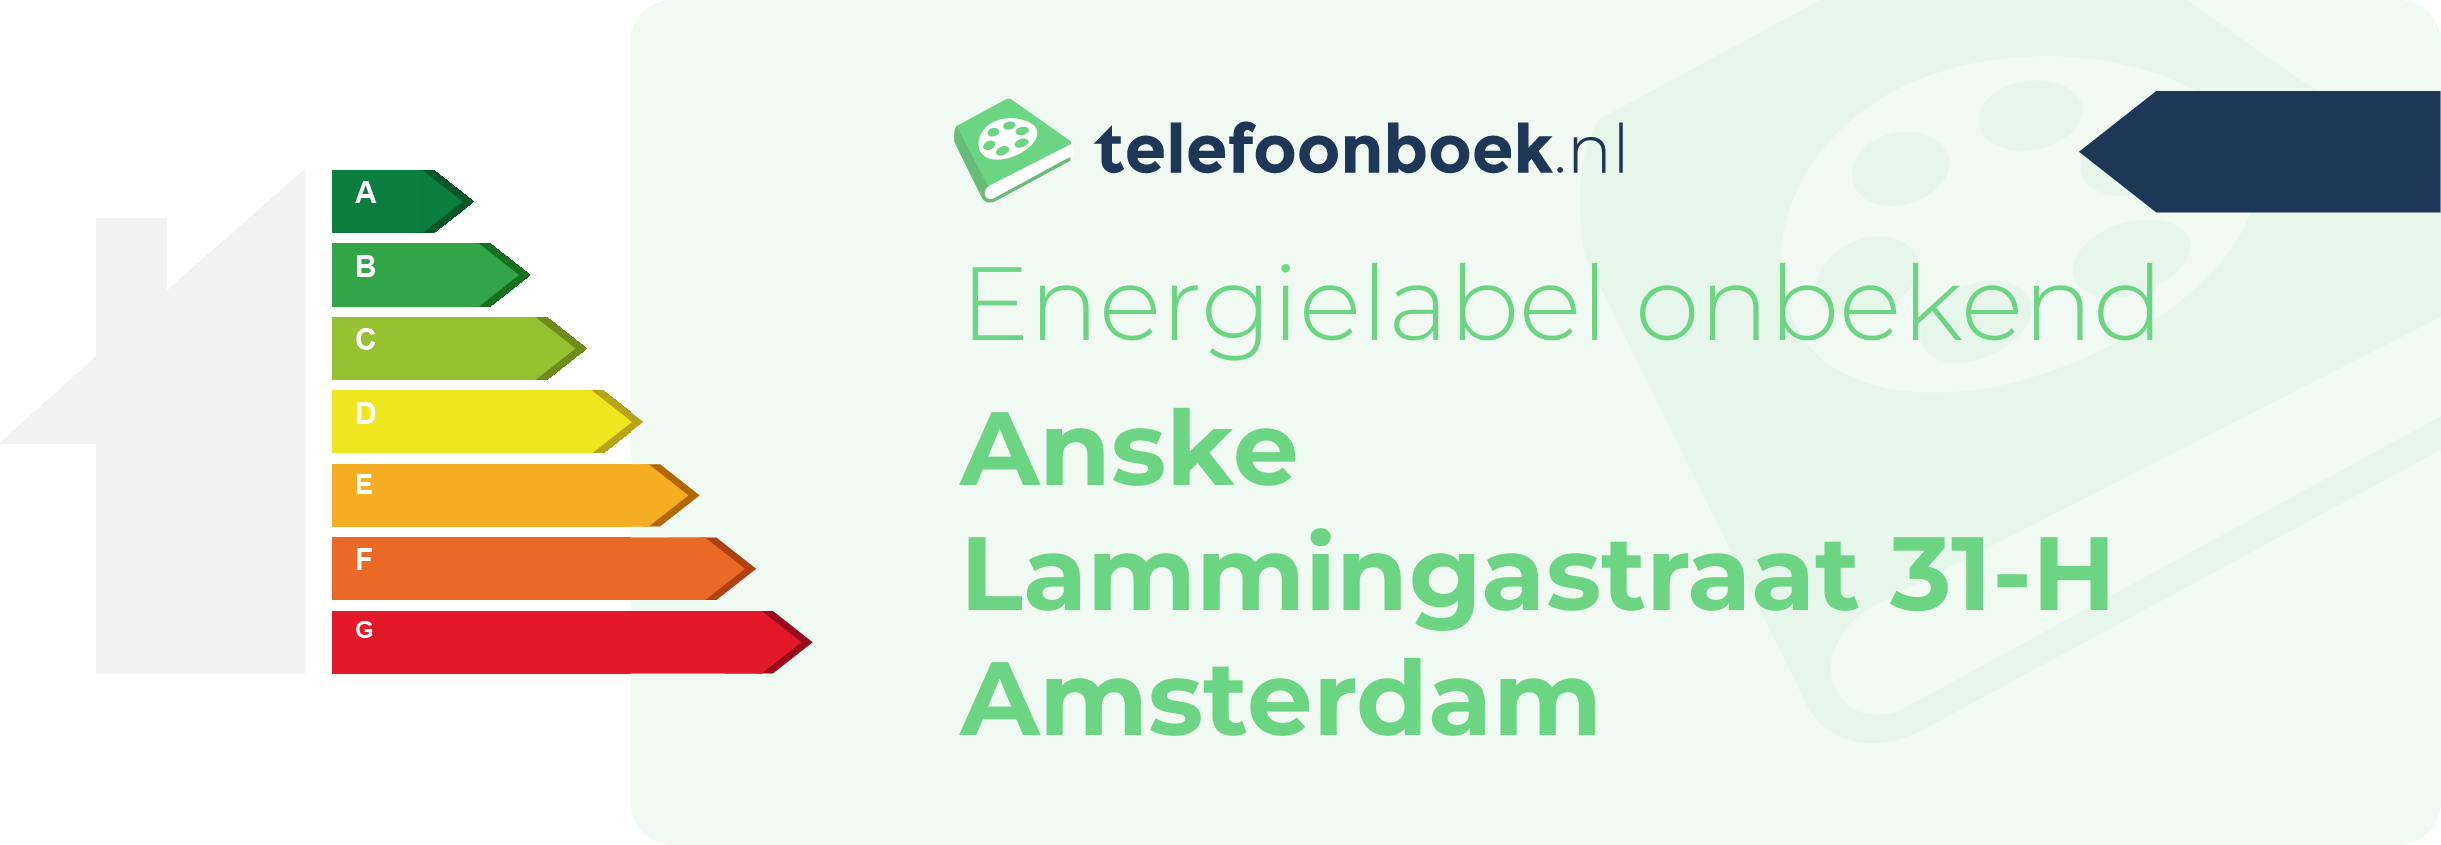 Energielabel Anske Lammingastraat 31-H Amsterdam